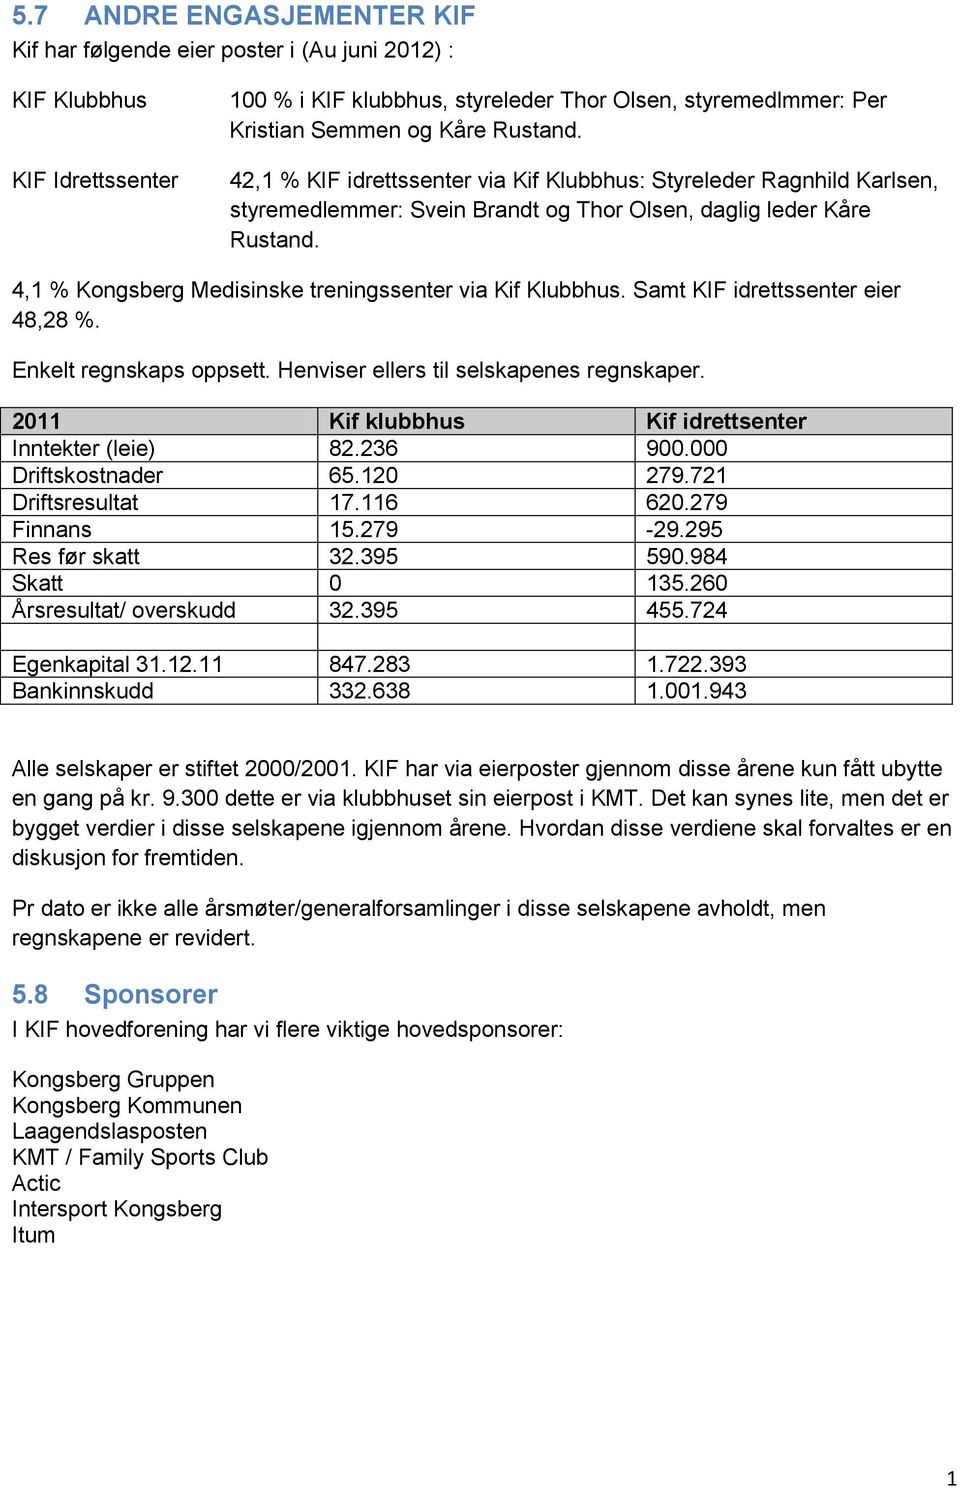 4,1 % Kongsberg Medisinske treningssenter via Kif Klubbhus. Samt KIF idrettssenter eier 48,28 %. Enkelt regnskaps oppsett. Henviser ellers til selskapenes regnskaper.